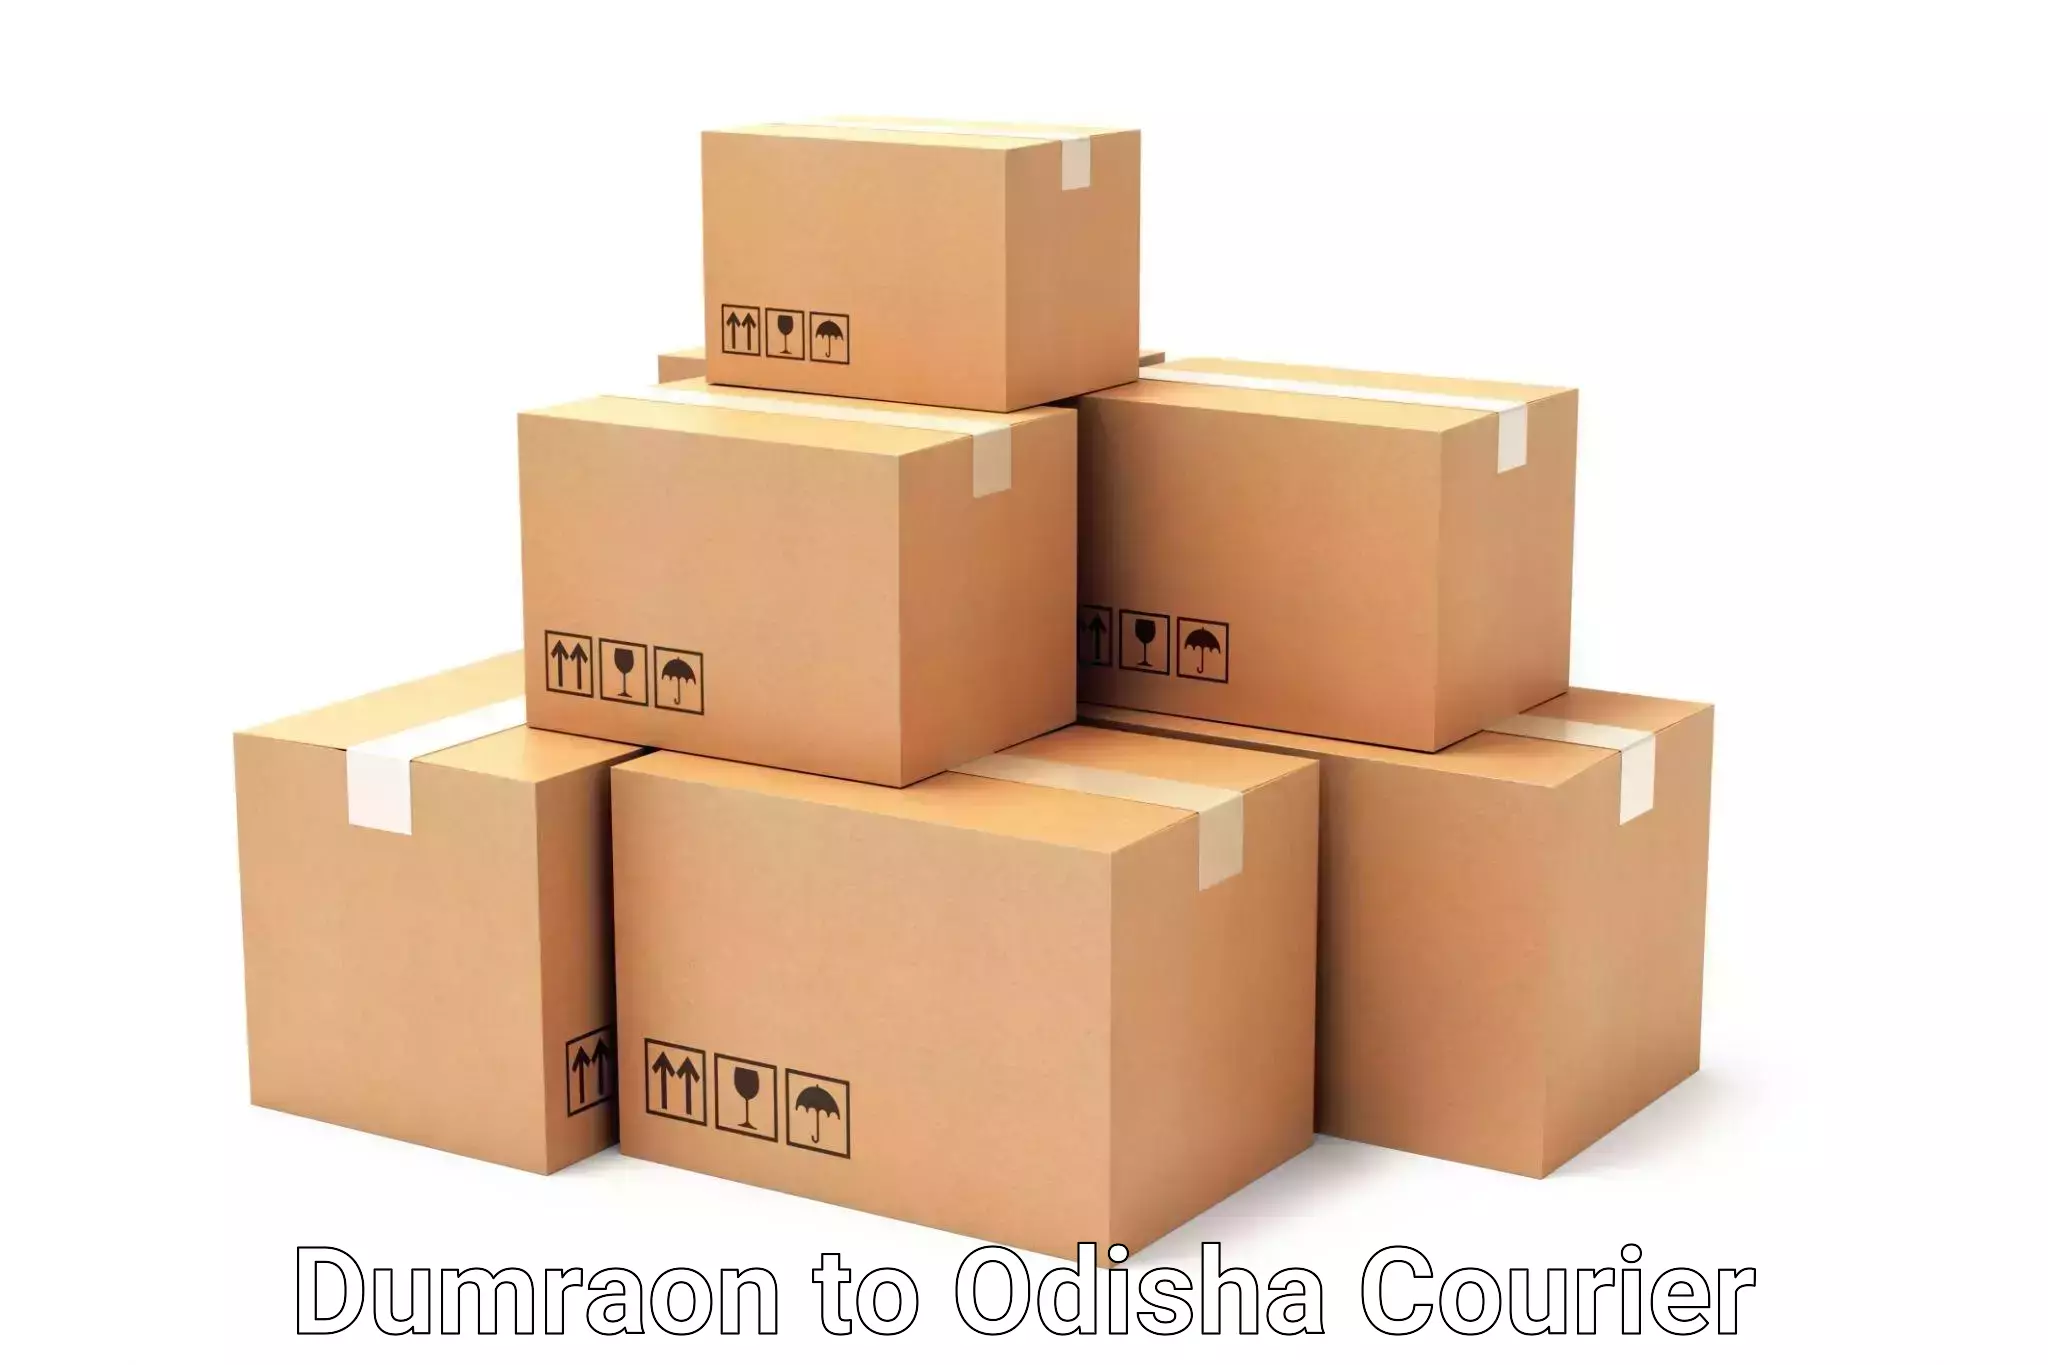 Luggage transport consulting Dumraon to Odisha